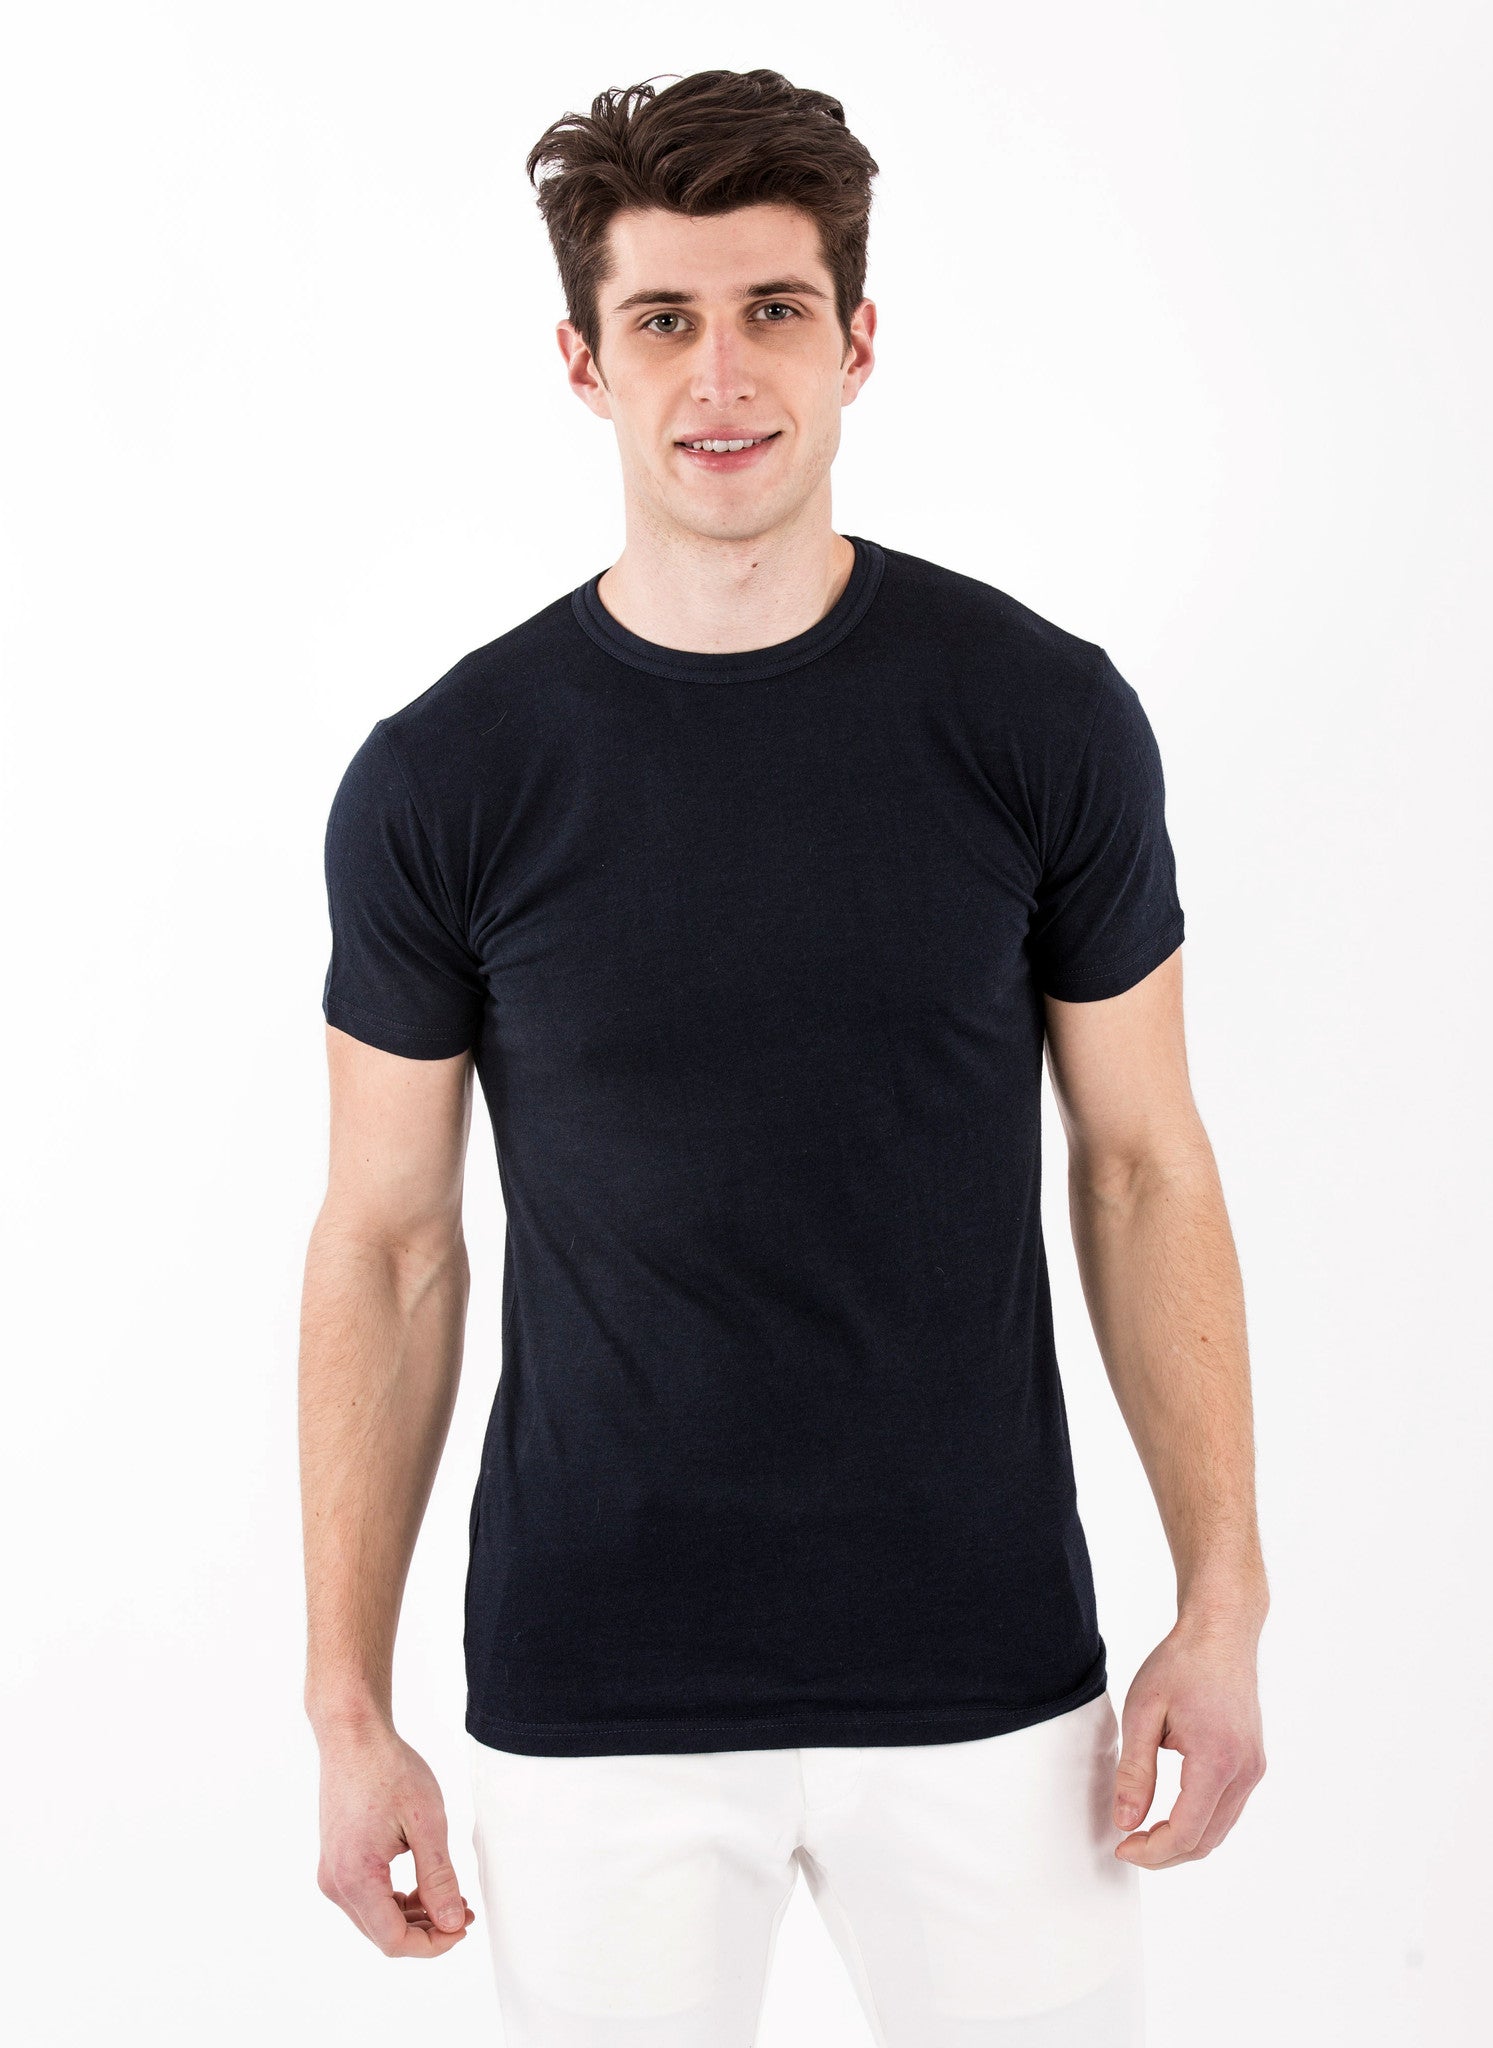 Mens – The Bamboo Shirt | Natural and Organic T-shirts